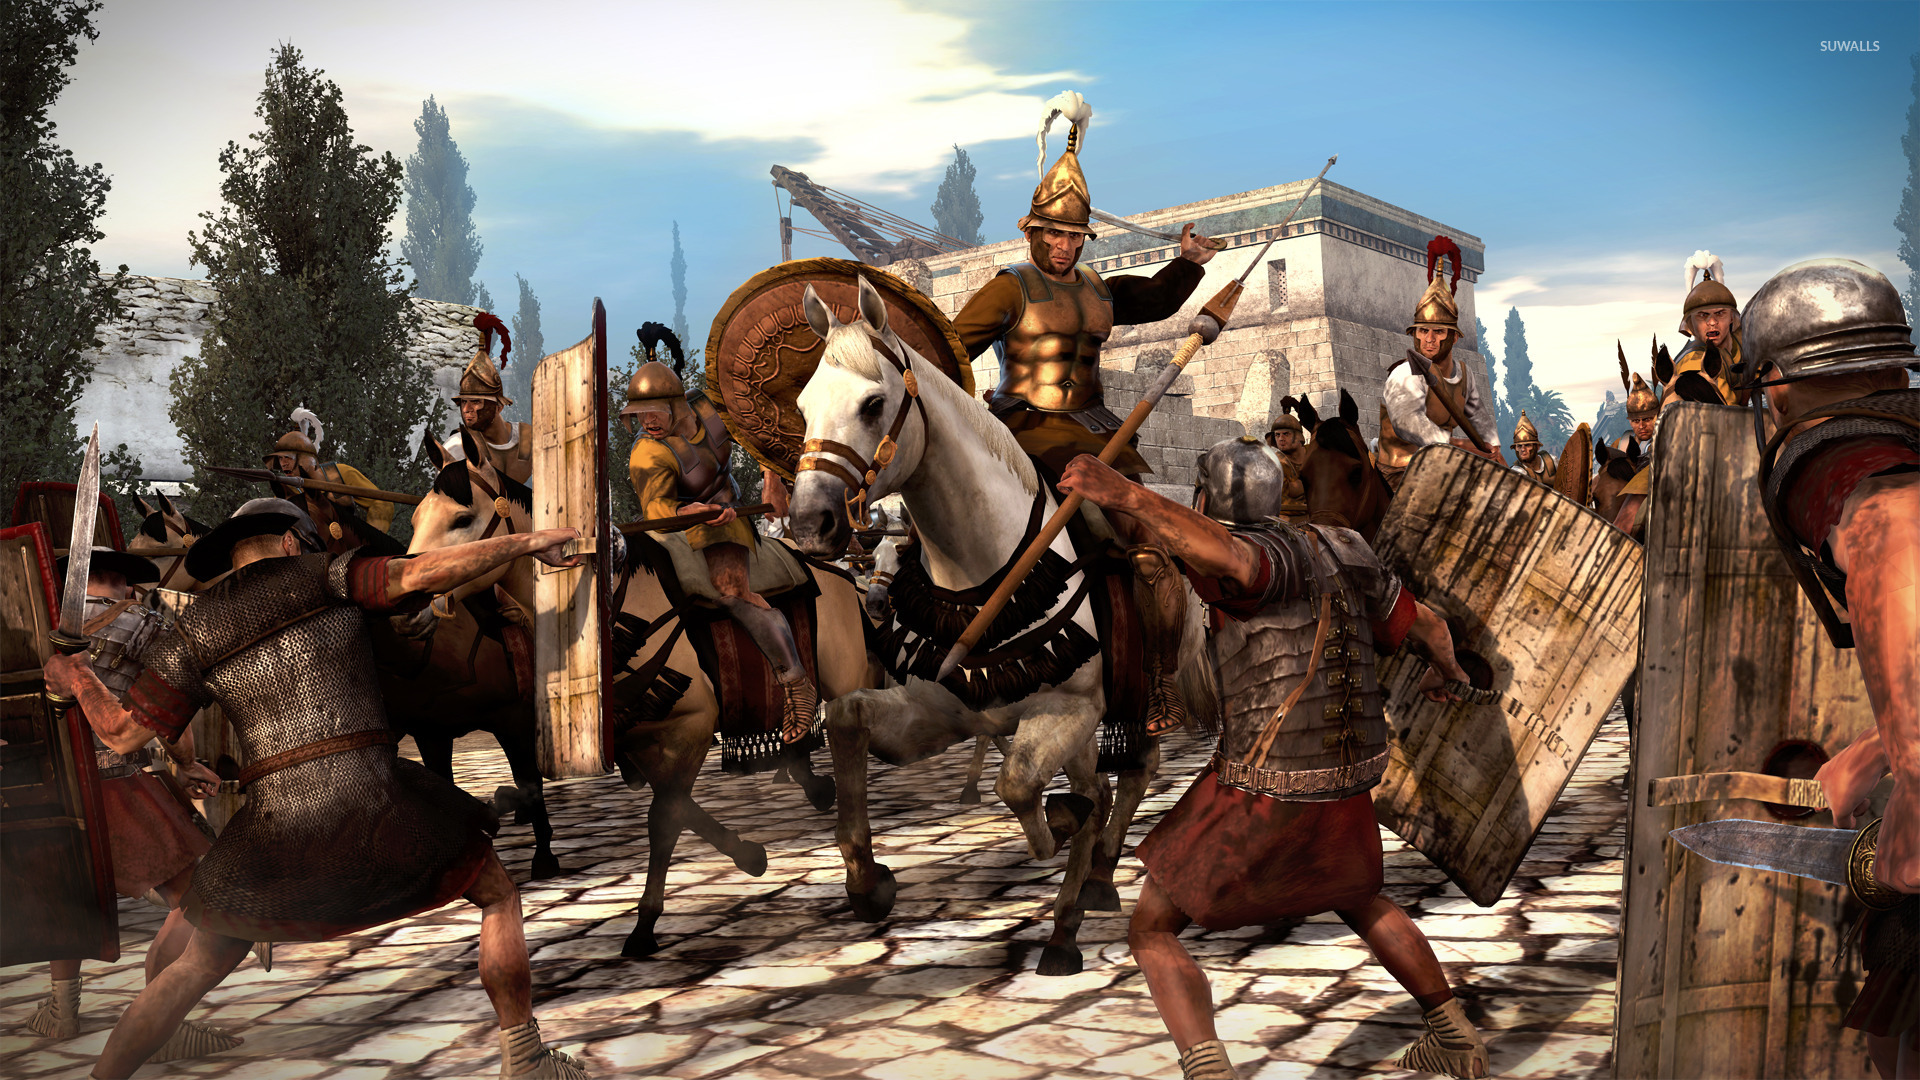 로마 총 전쟁 벽지,액션 어드벤처 게임,pc 게임,팩 동물,중세,신화학